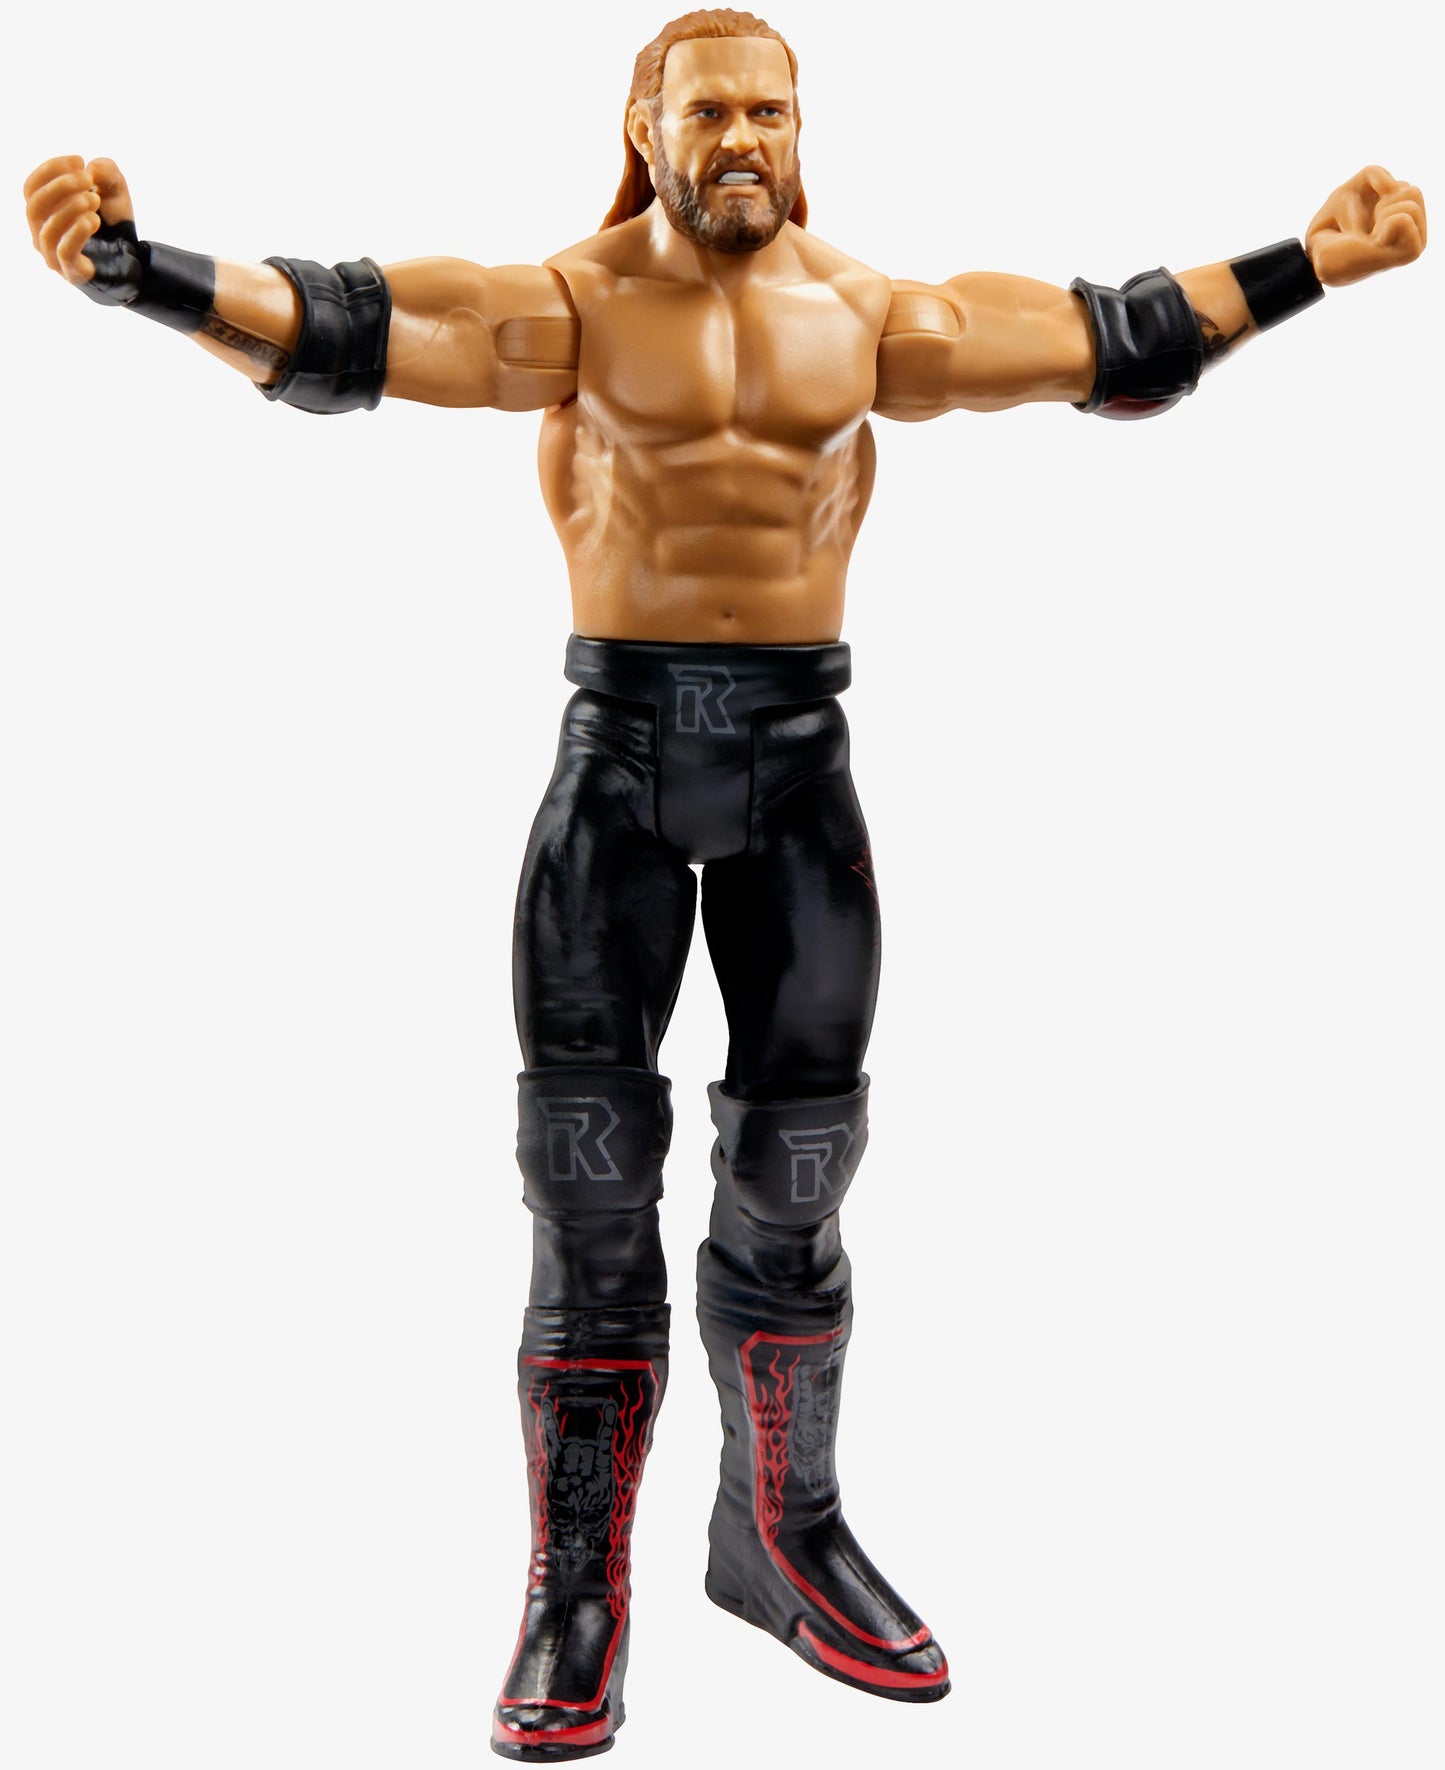 Edge - WWE Basic Series #138